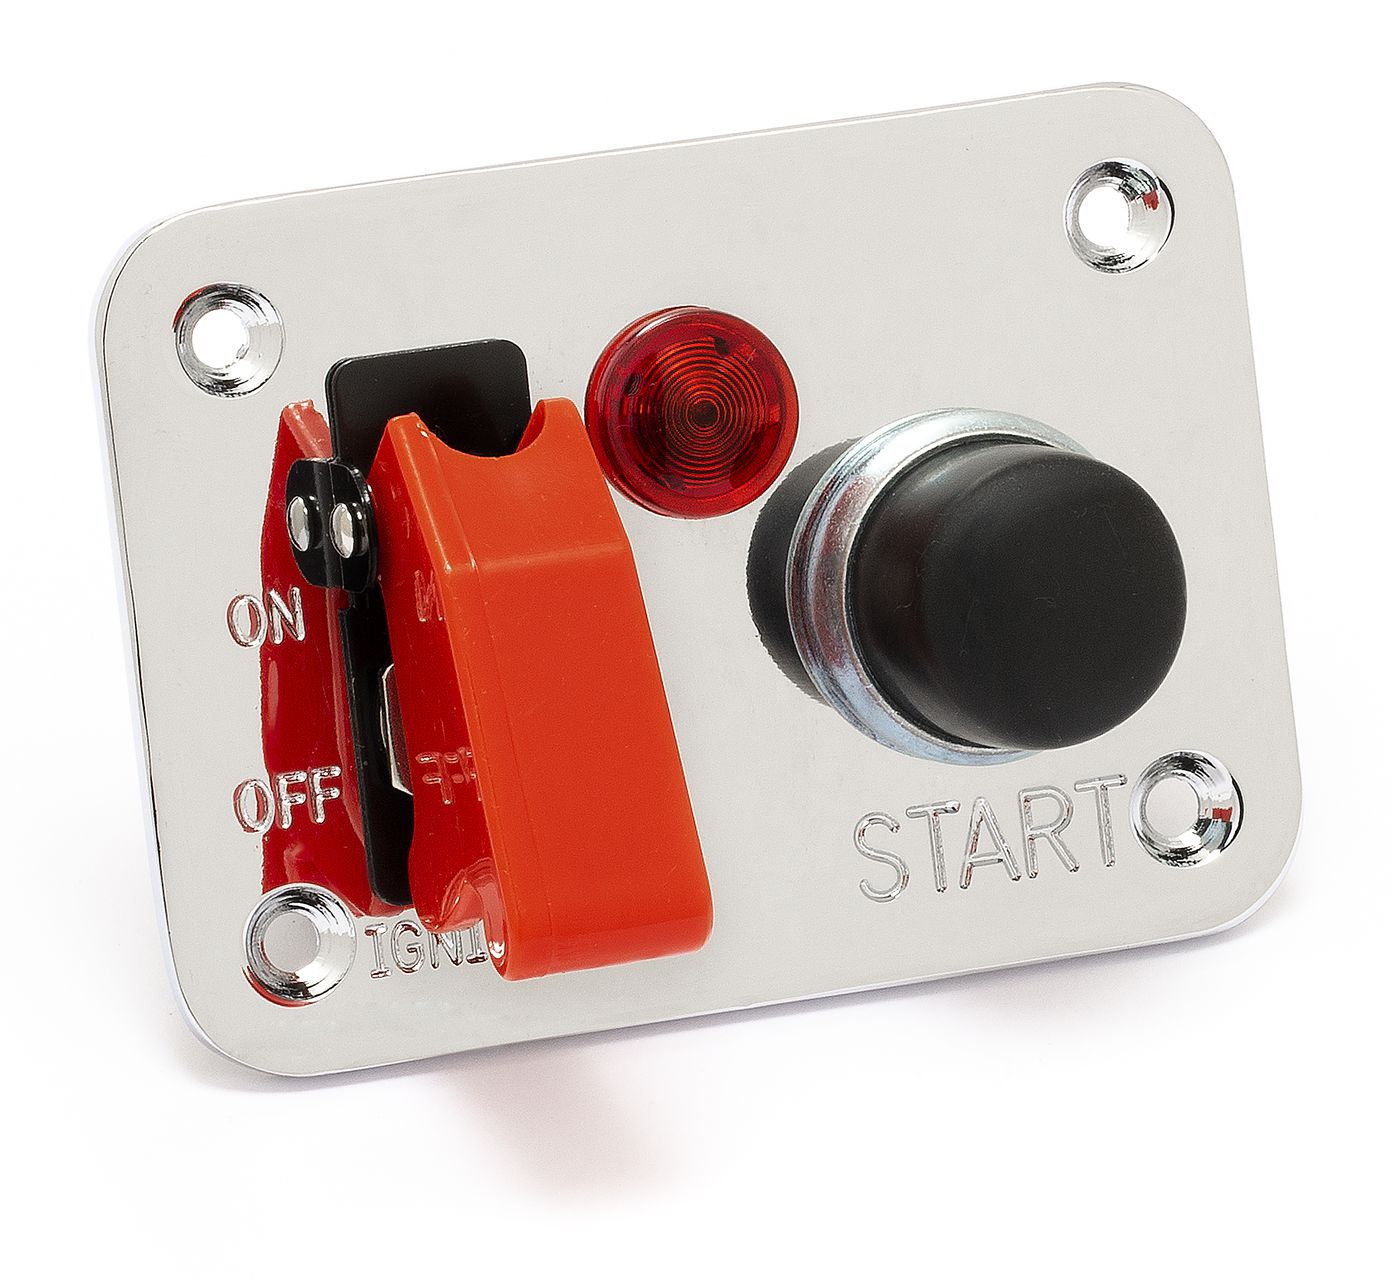 Starterknopf
Starter push button
Bouton de starter
Botón de arr